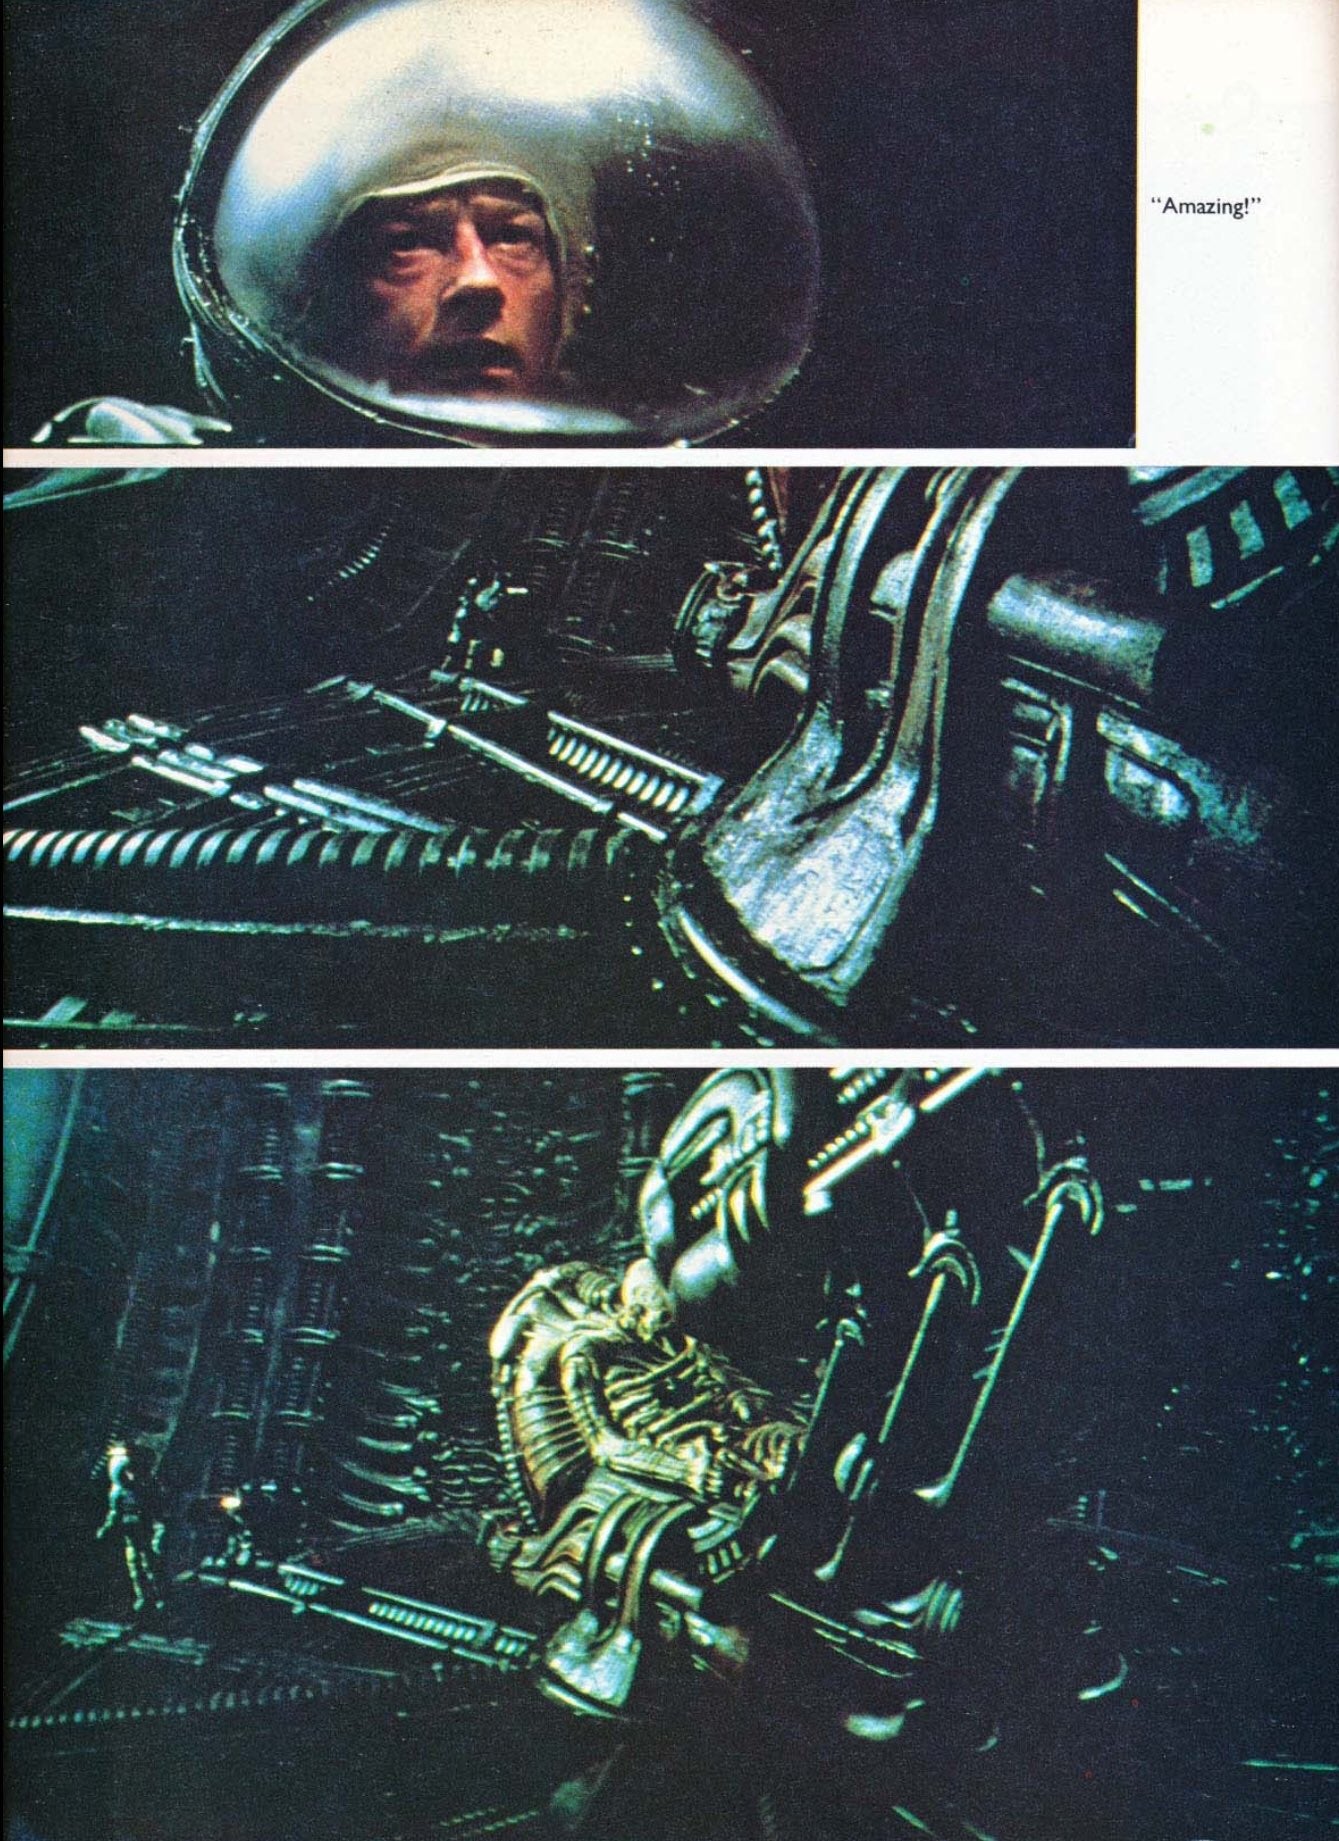 Alien: The Movie Novel